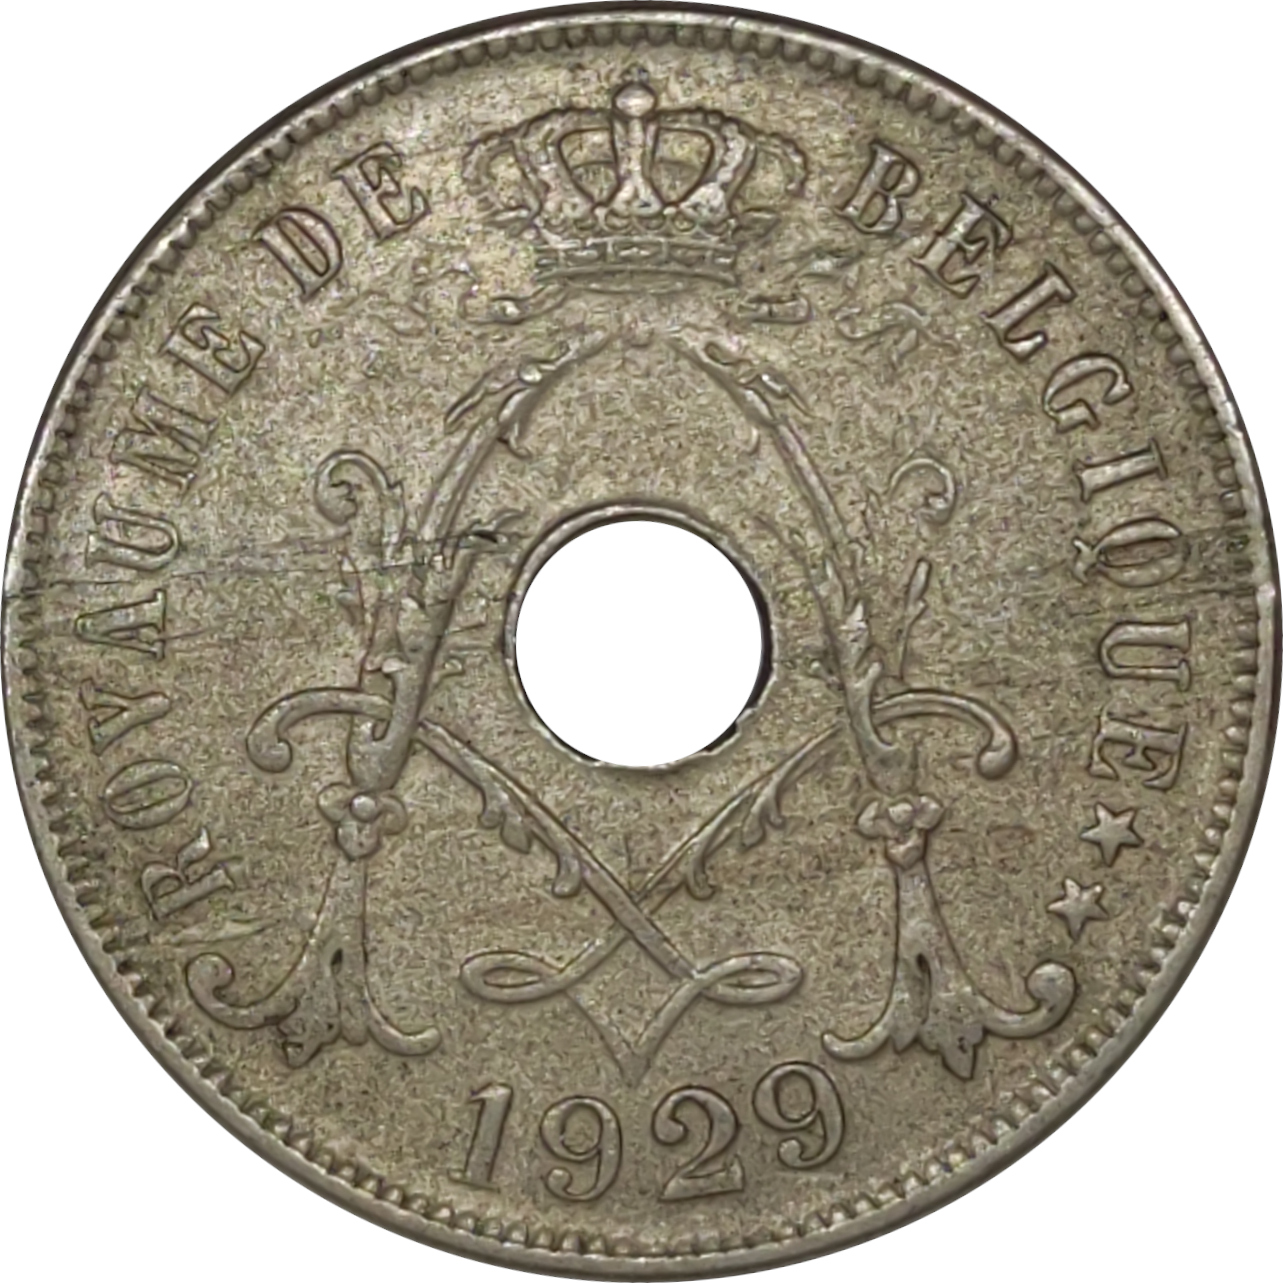 25 centimes - Albert